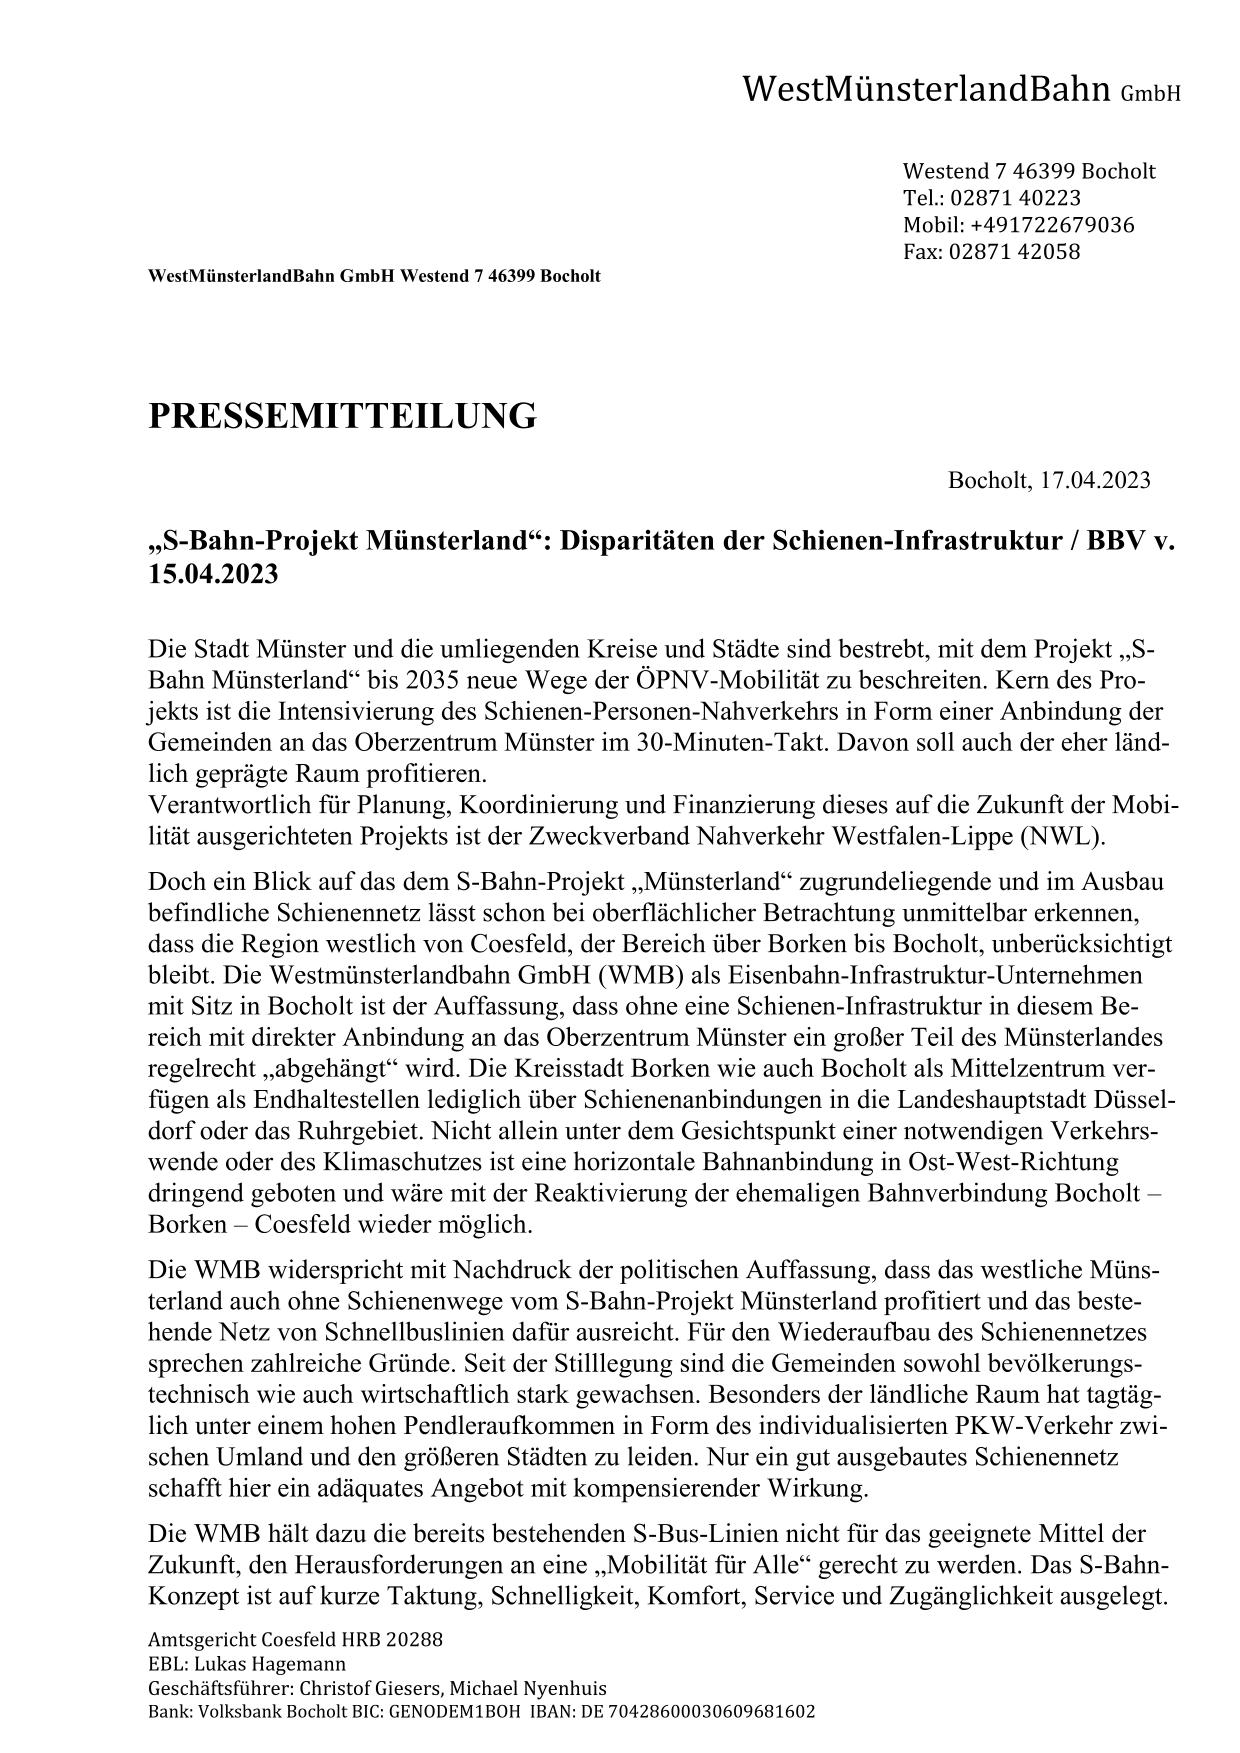 WMB-Stellungnahme "S-Bahn-Projekt Münsterland" v. 17.04.2023 / Seite 1